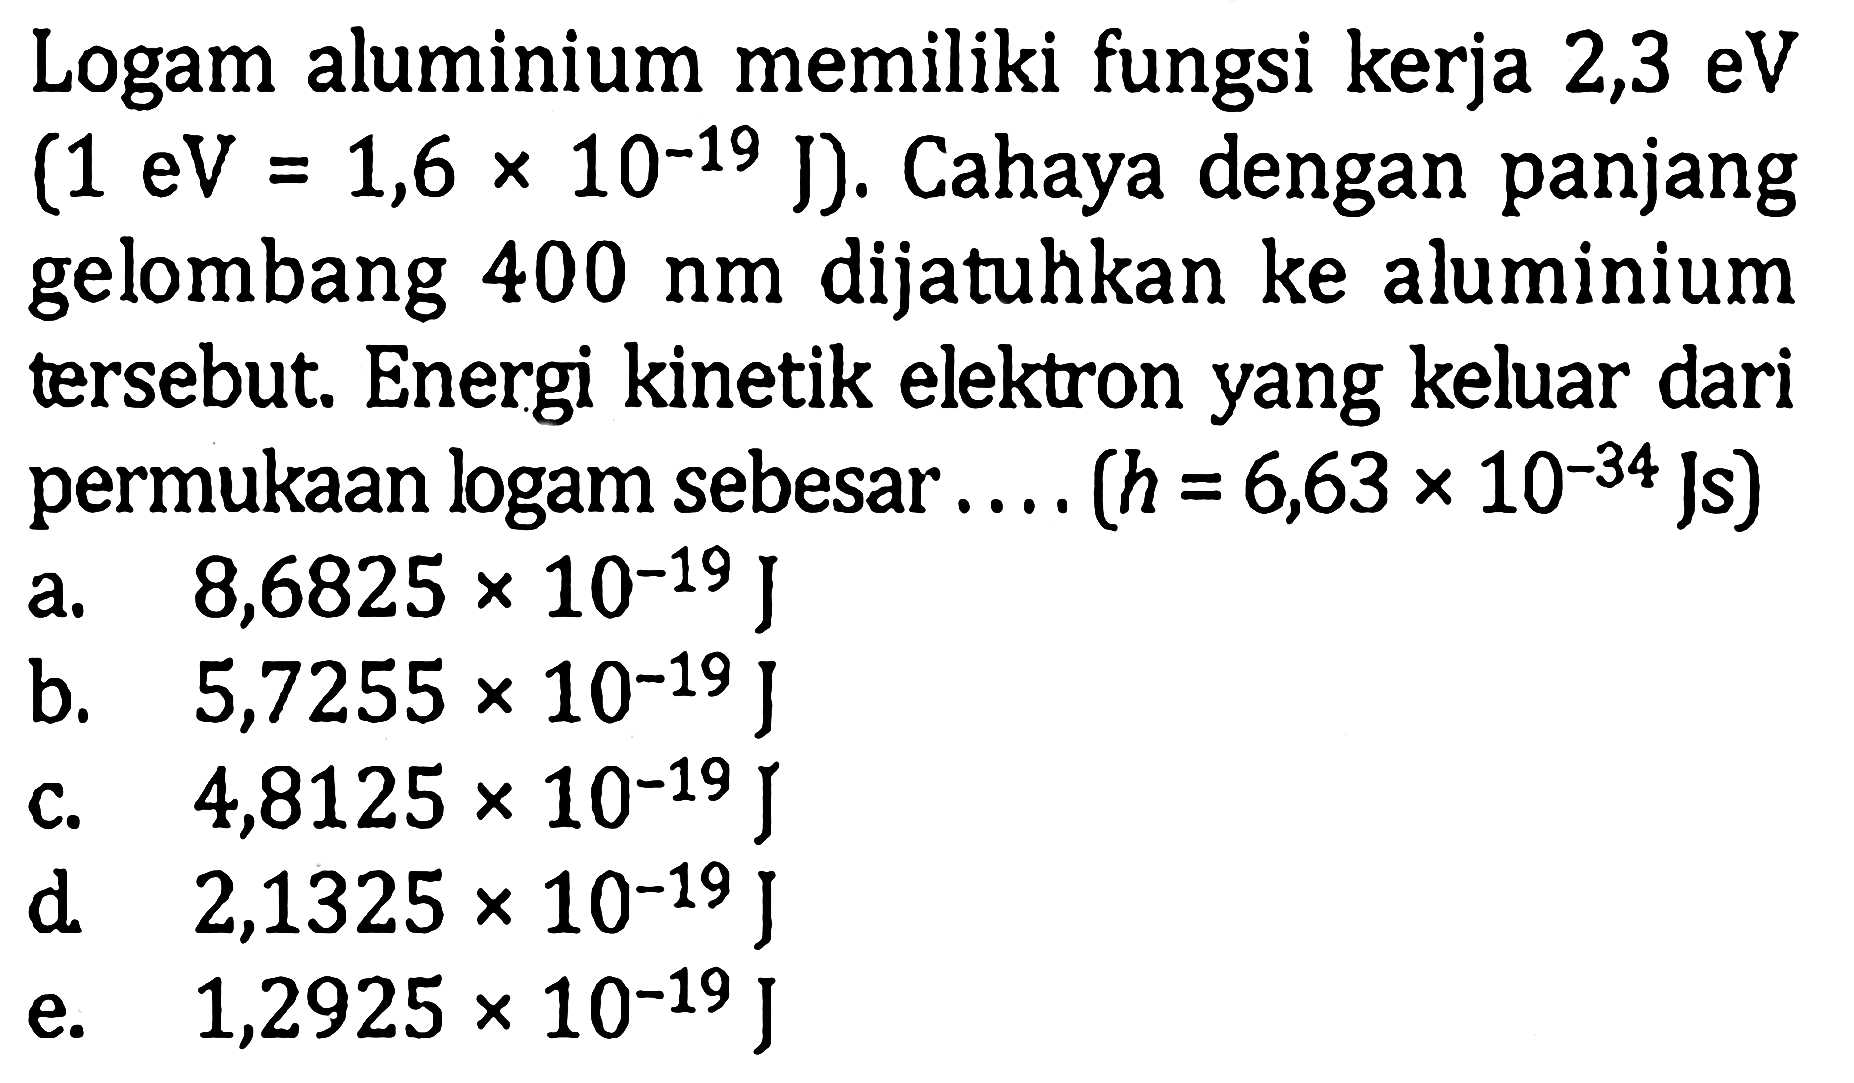 Logam aluminium memiliki fungsi kerja 2,3 eV  (1 eV=1,6x10^(-19) J) . Cahaya dengan panjang gelombang  400 nm  dijatuhkan ke aluminium tersebut. Energi kinetik elektron yang keluar dari permukaan logam sebesar....  (h=6,63x10^(-34) Js) 